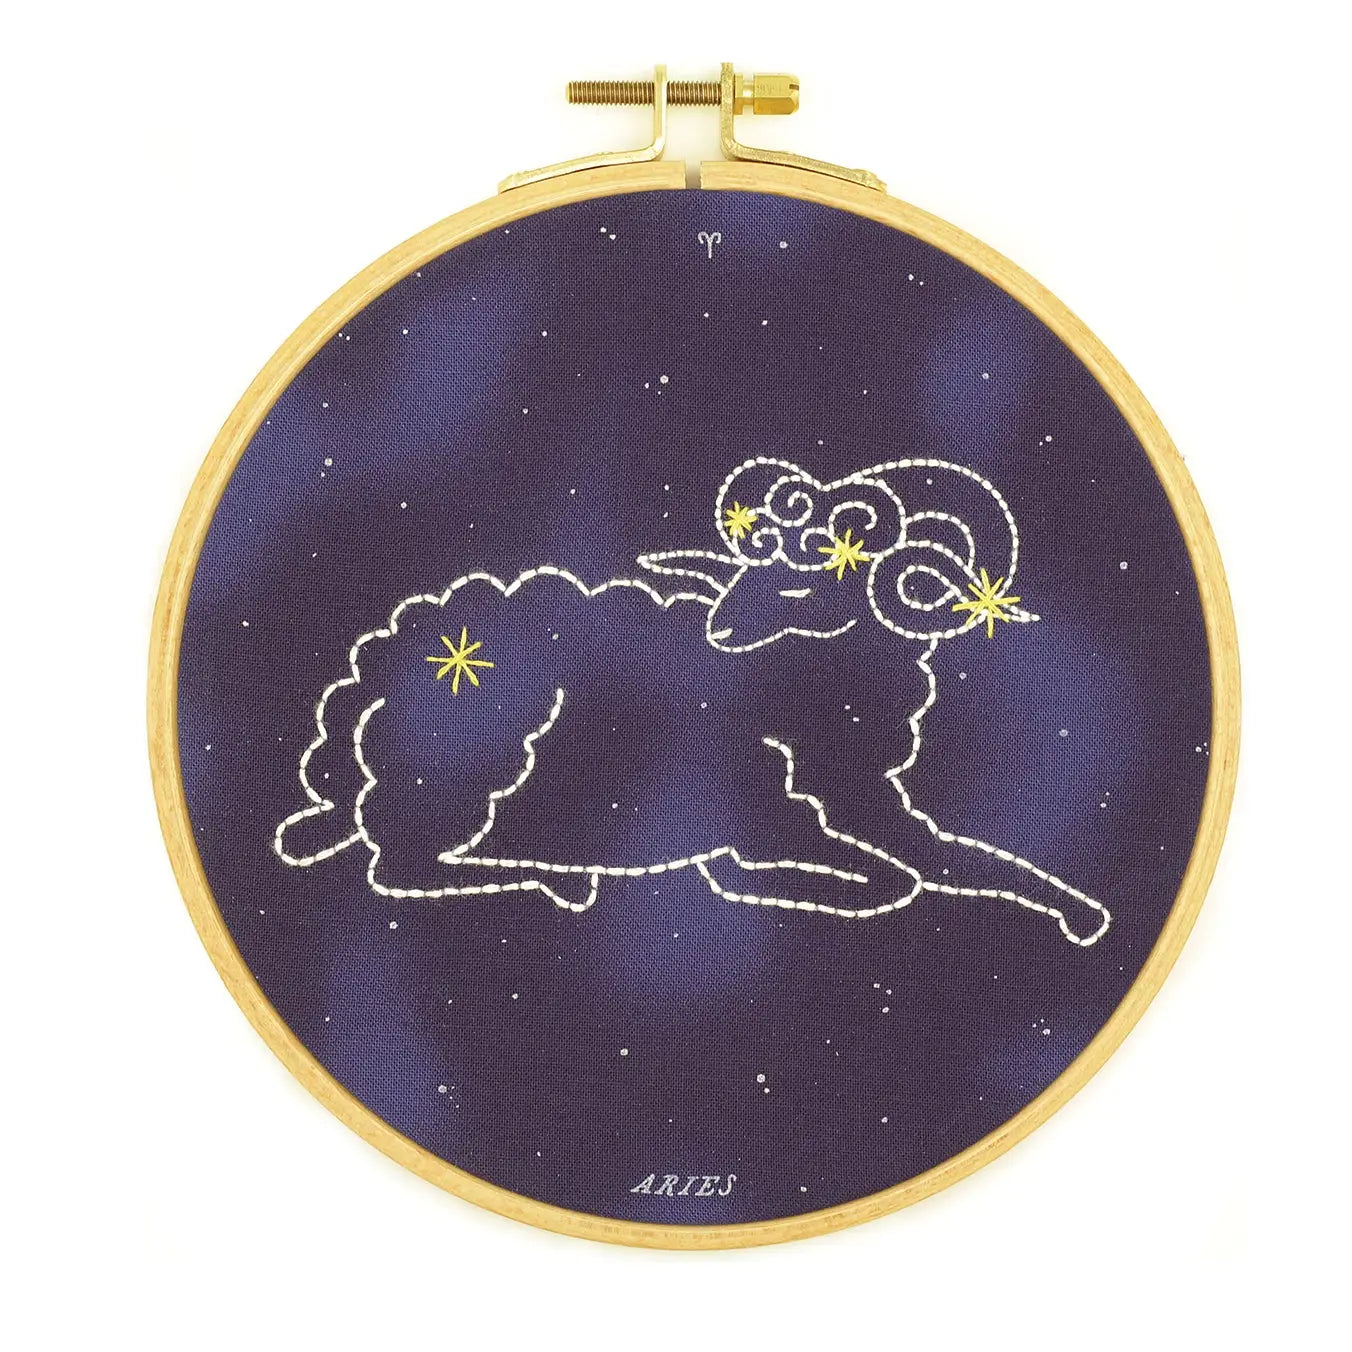 Aries embroidery hoop kit